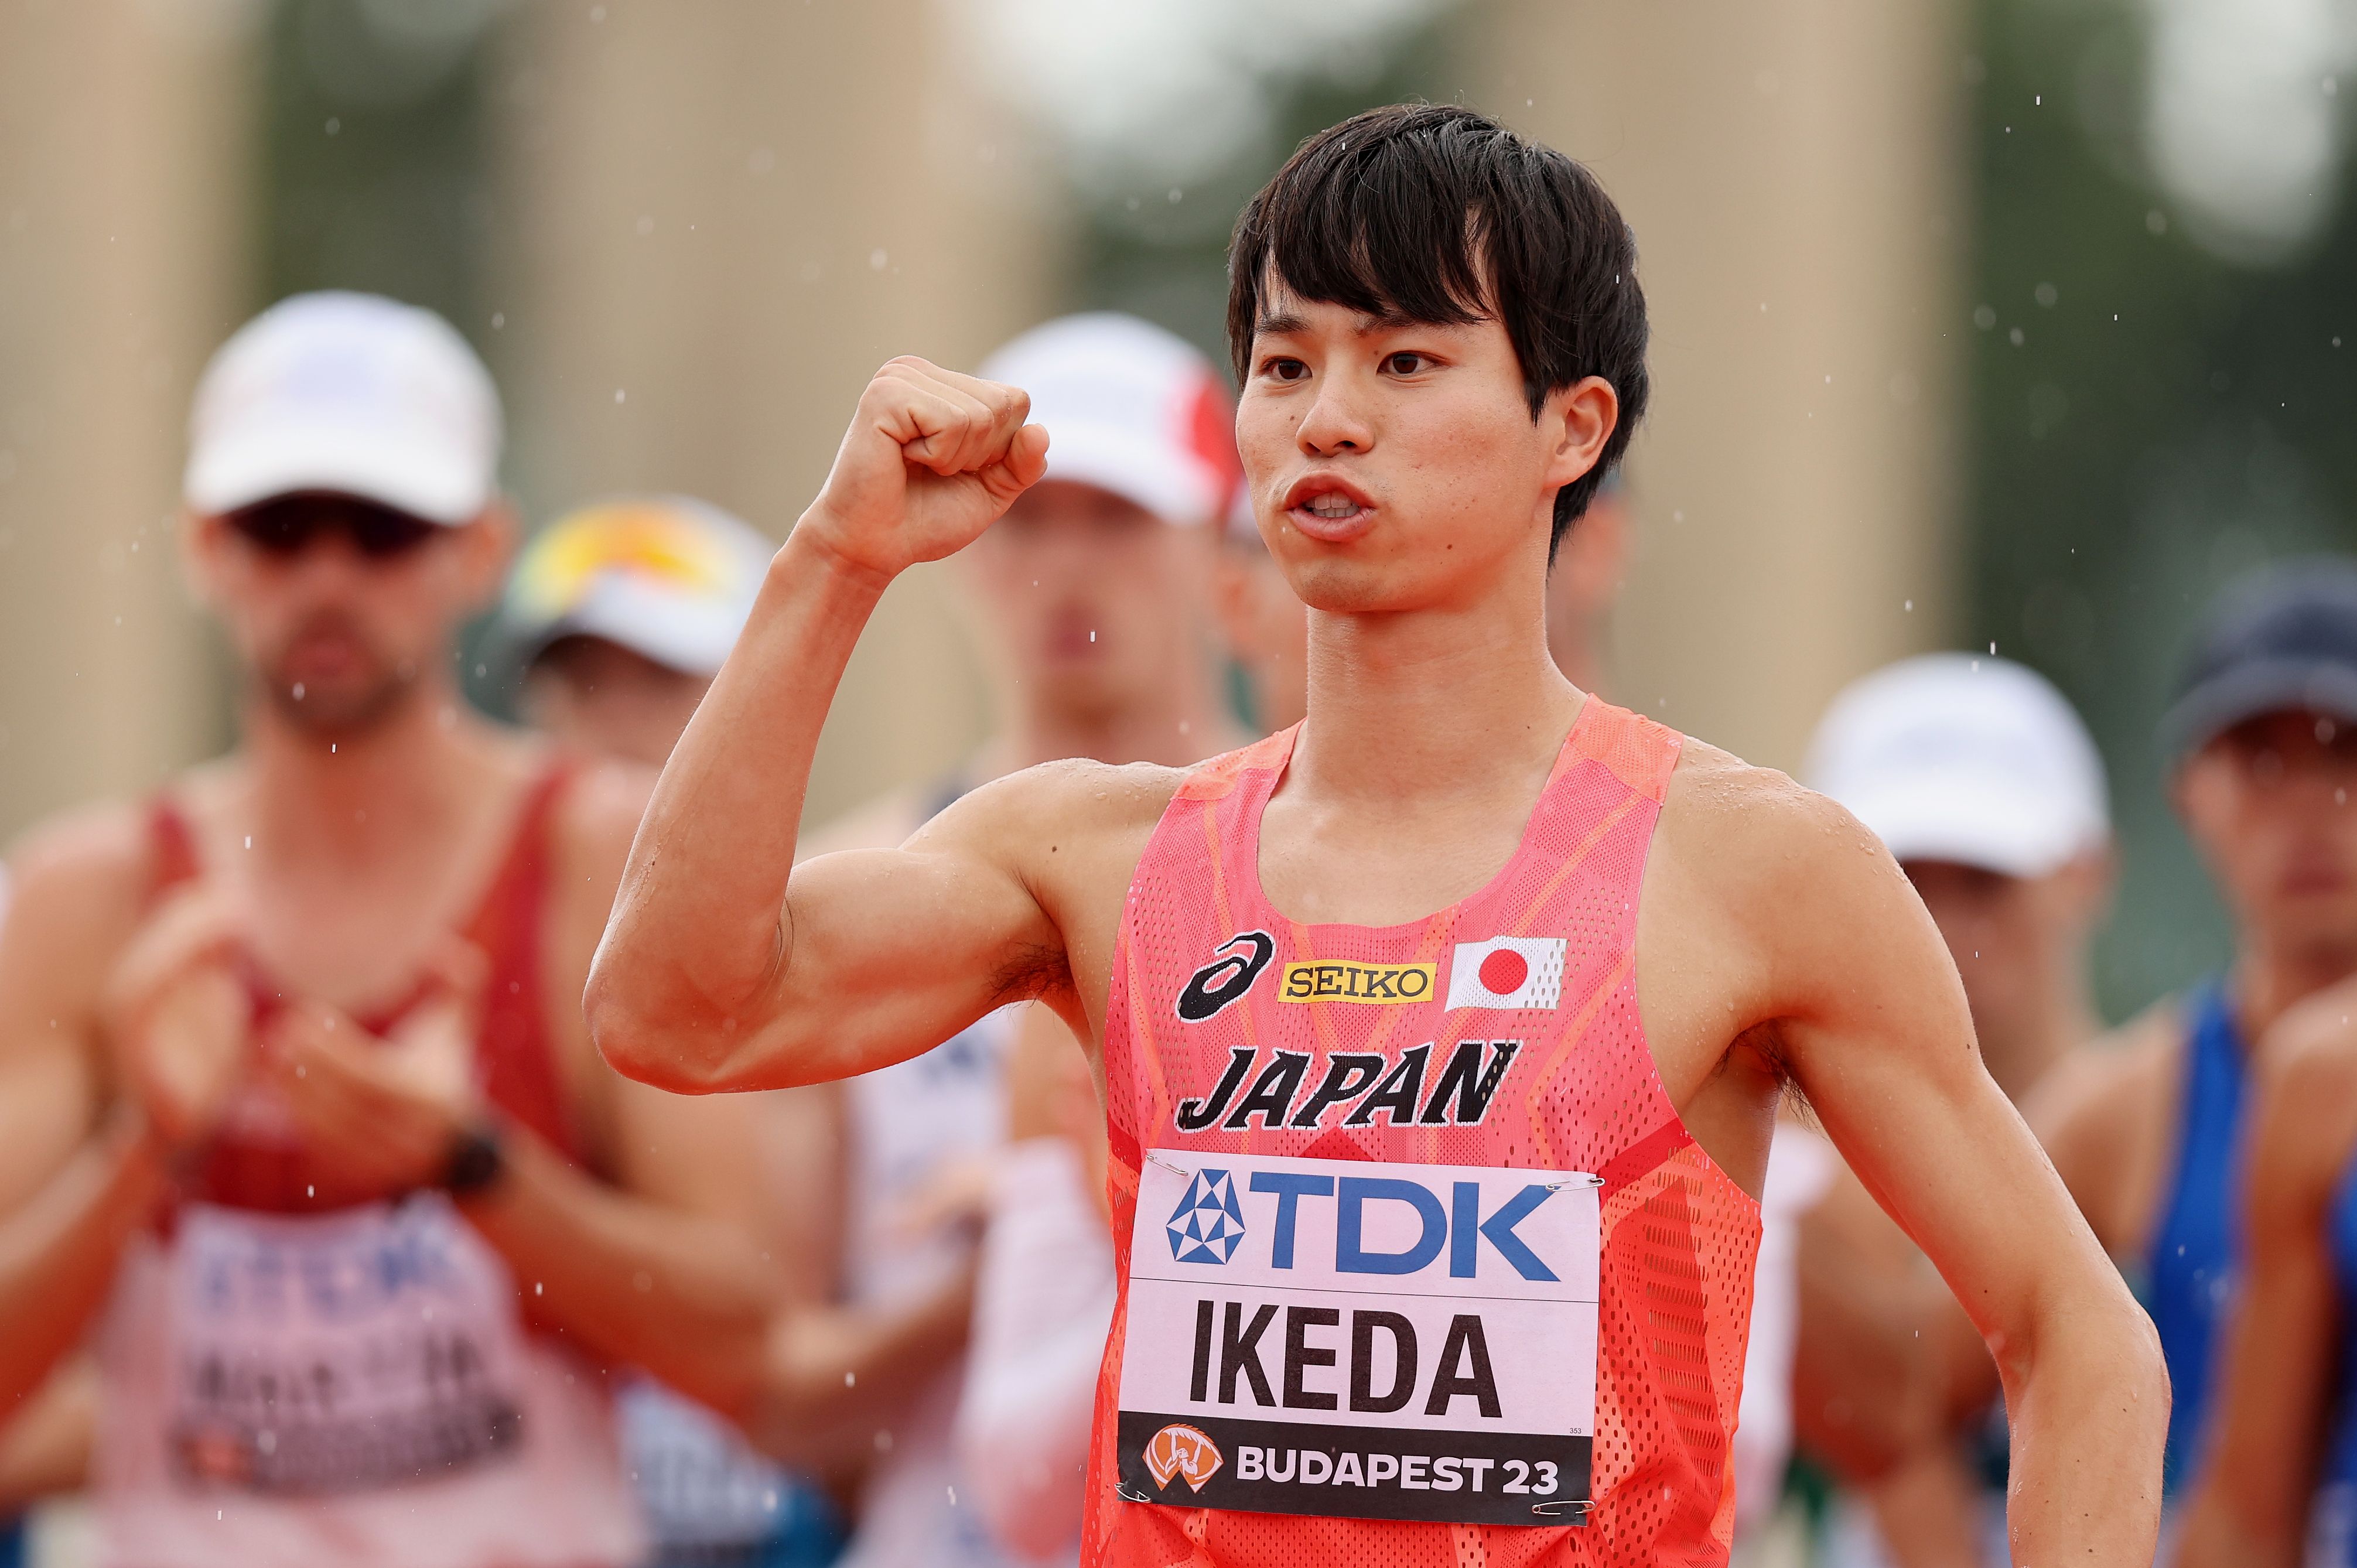 Koki Ikeda at the World Athletics Championships Budapest 23